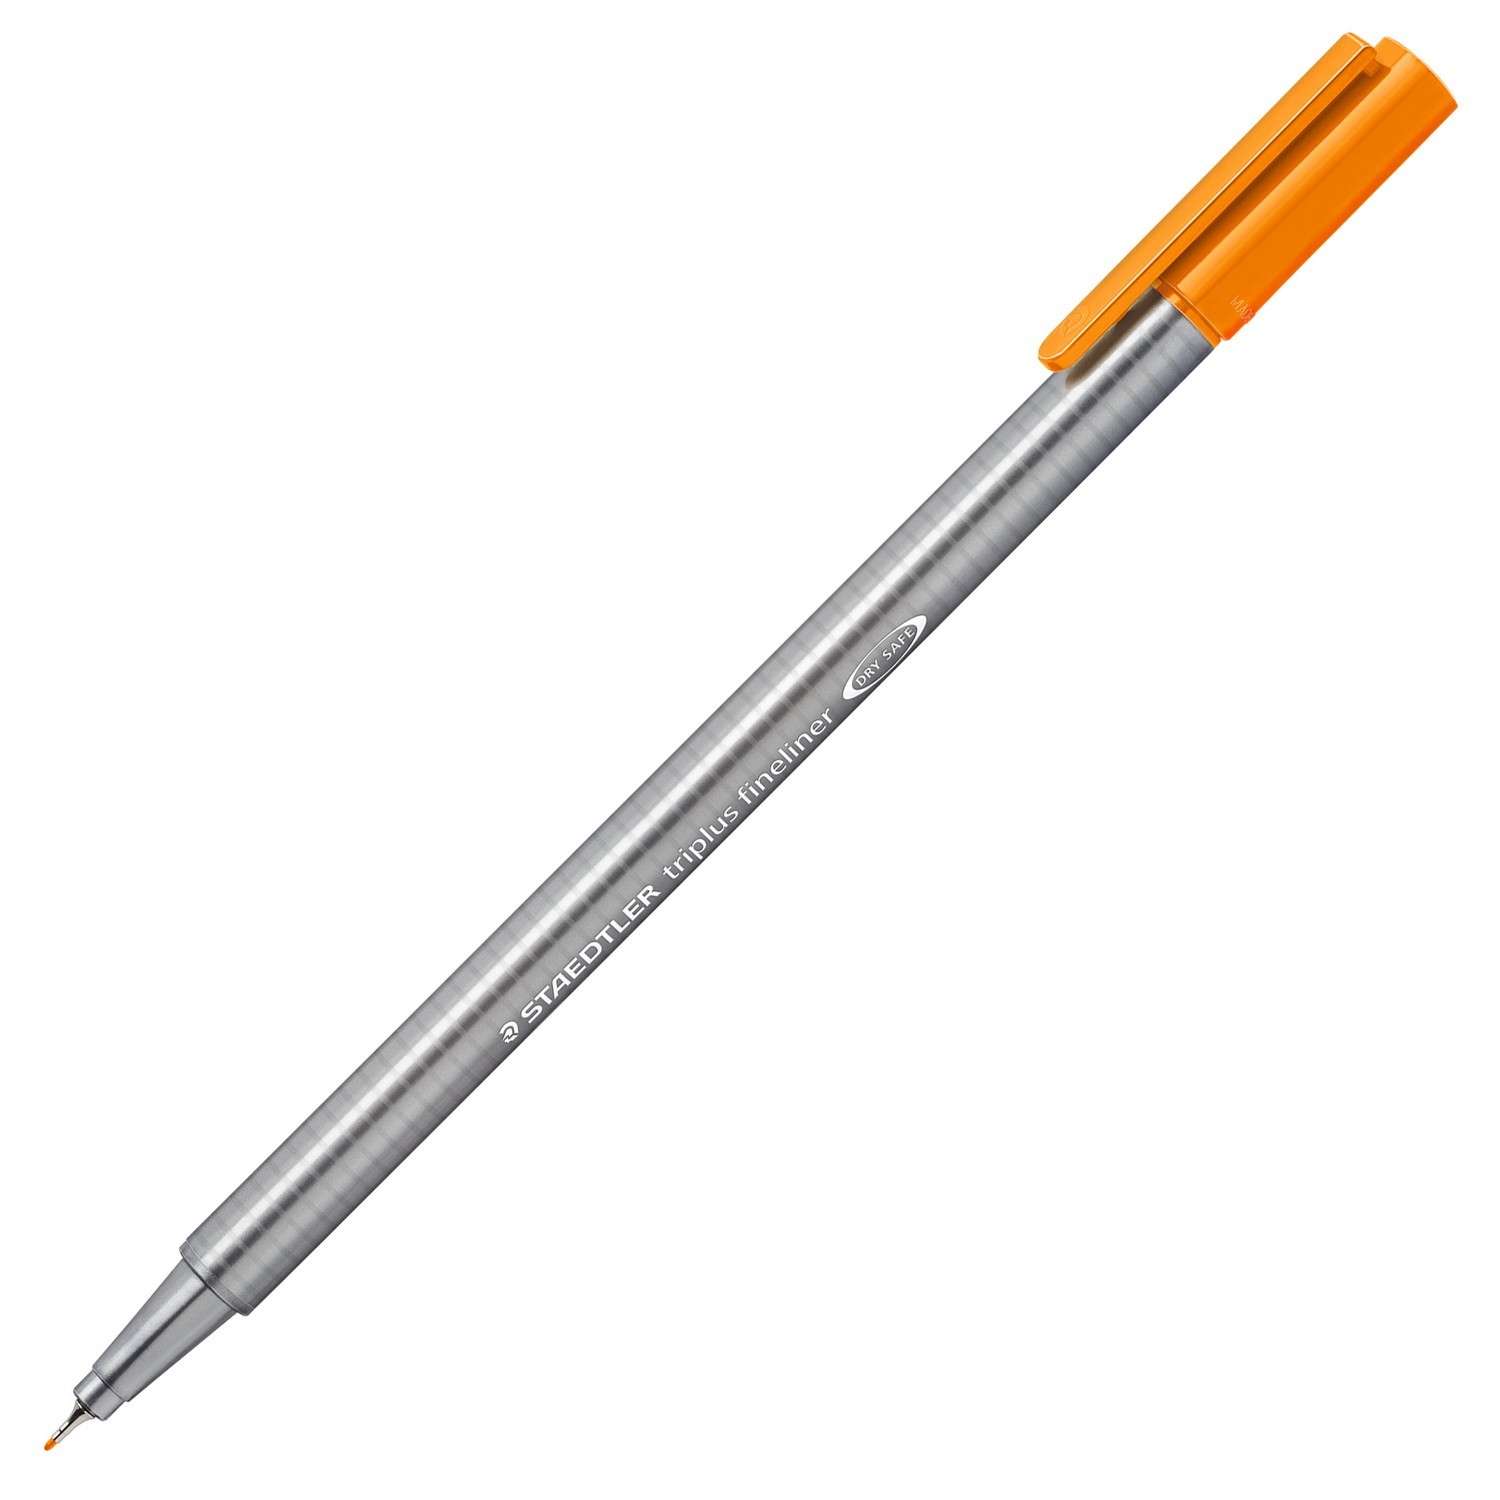 Ручка капиллярная Staedtler Triplus трехгранная Оранжевая - фото 1